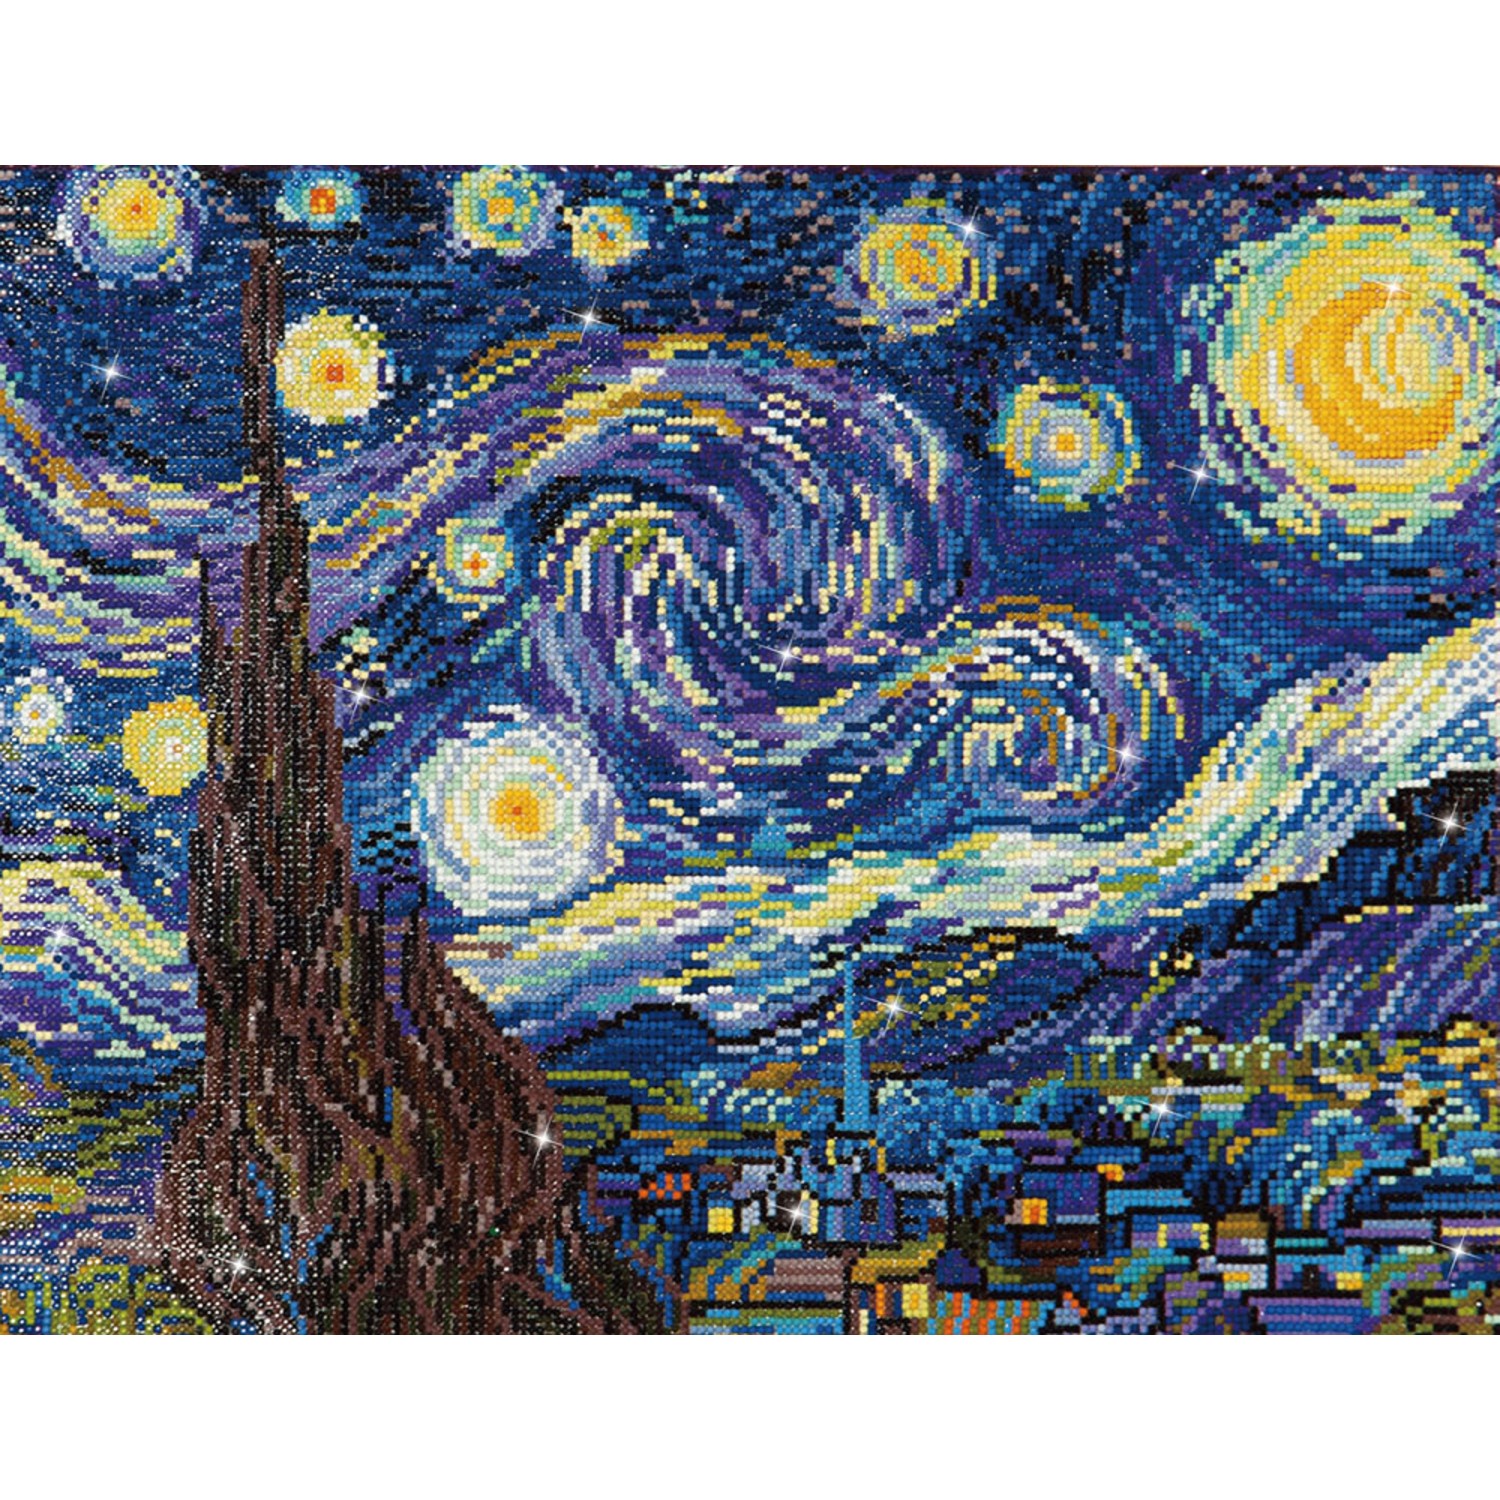 DD9.001 - Starry Night Van Gogh - 40.60X50.8